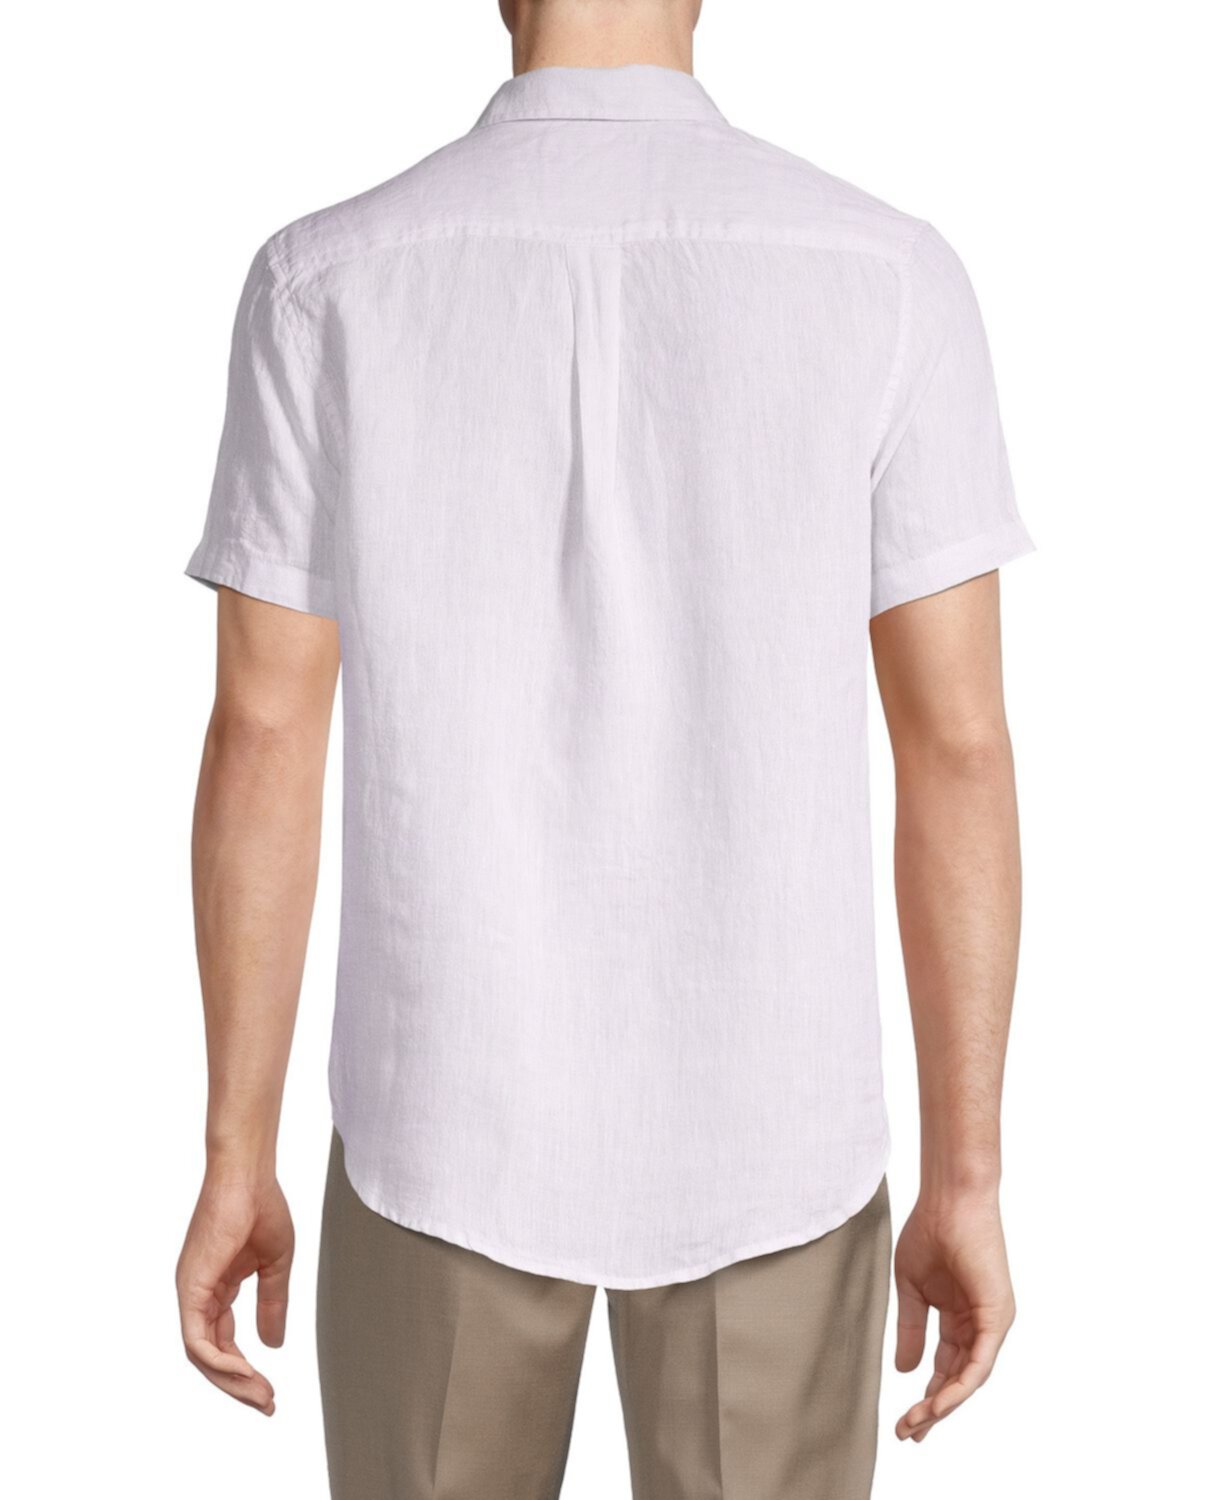 Текстурированная льняная рубашка Heritage Report Collection